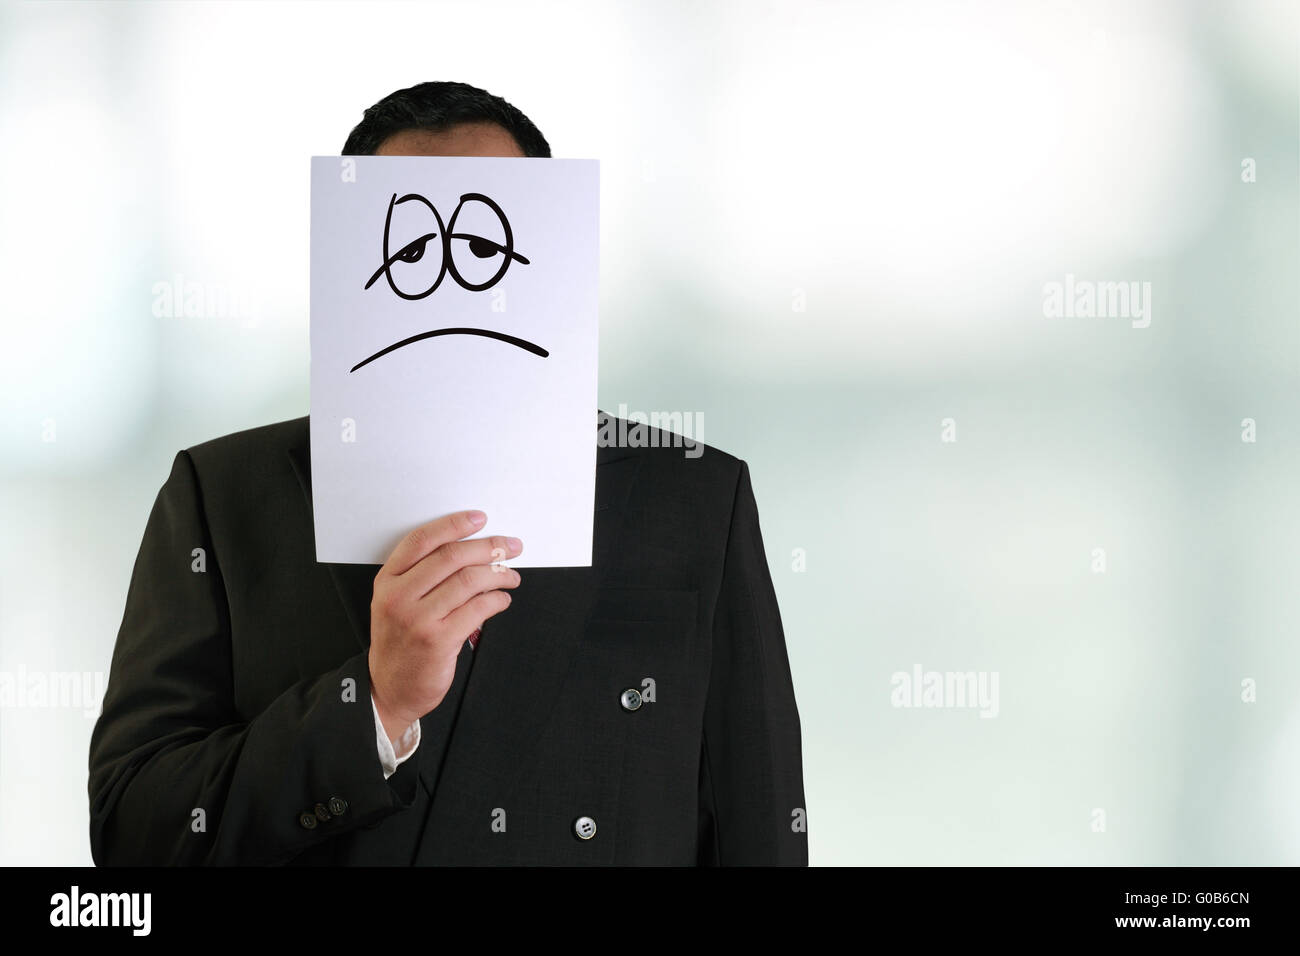 Il concetto di Business immagine di un imprenditore azienda libro bianco con maschera triste e stanco di fronte tracciata su di esso Foto Stock